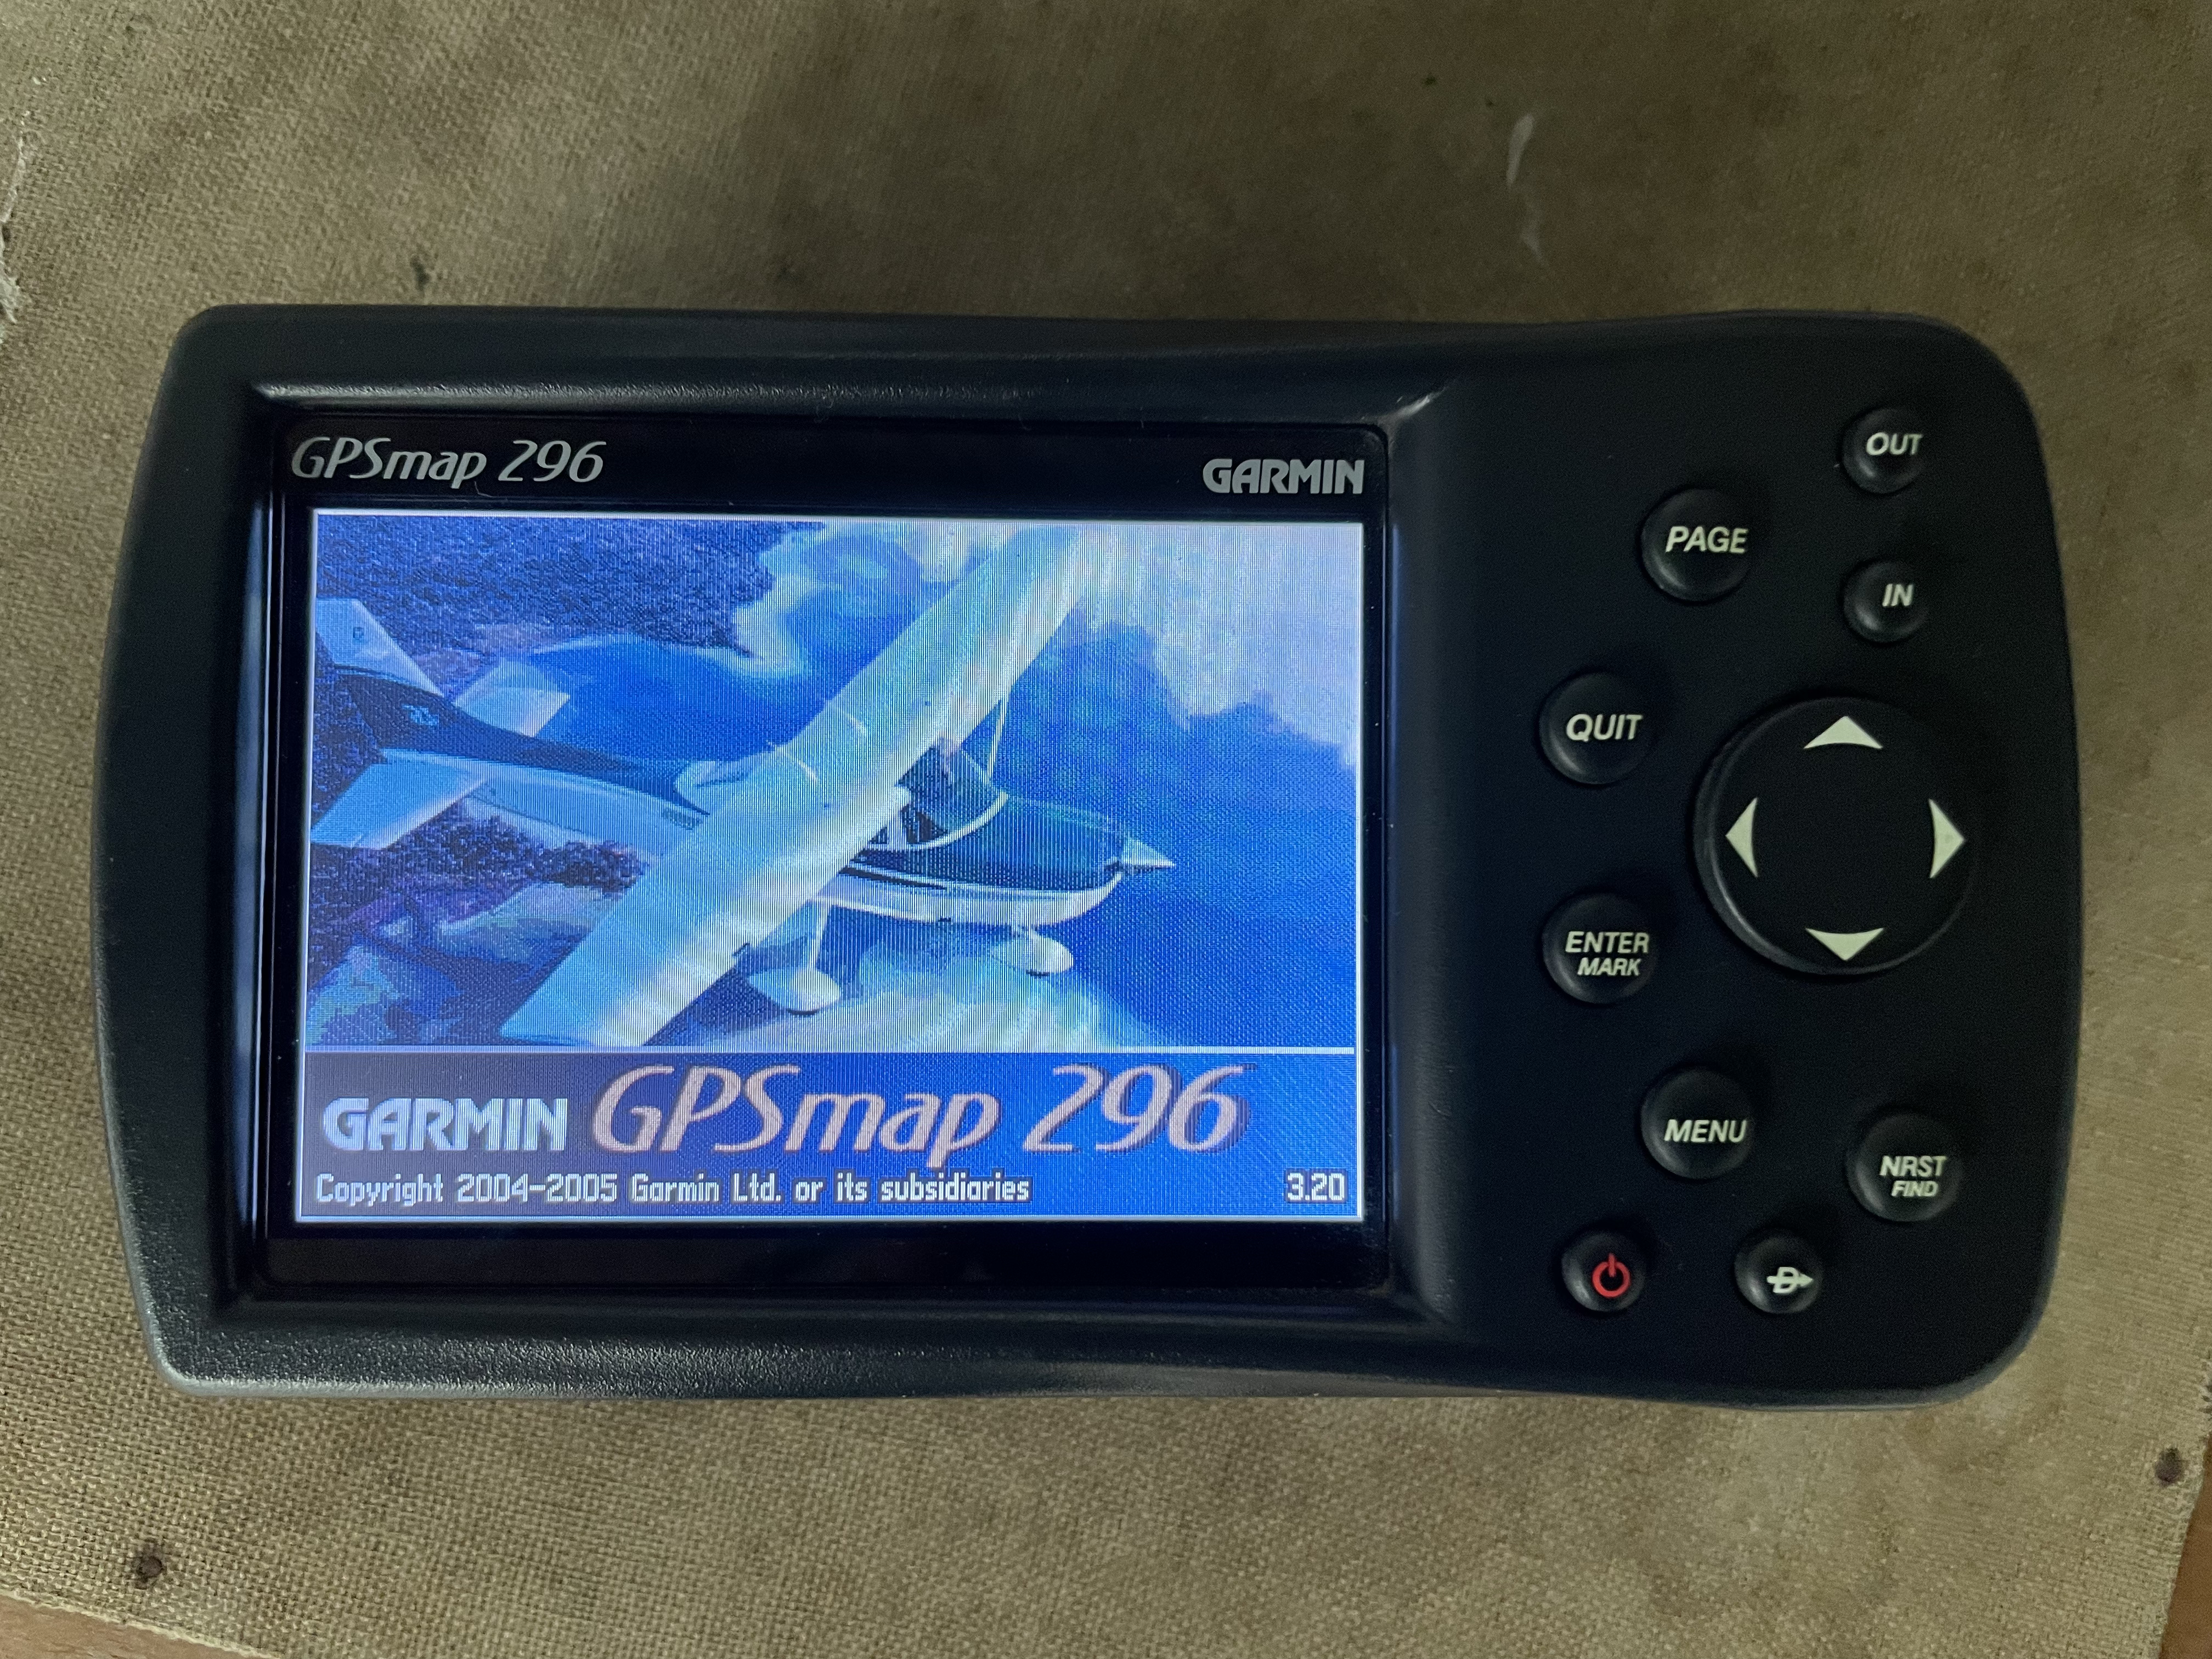 Afståelse Athletic Bugt Garmin GPSmap 296 GPS receiver afors advert number 53104